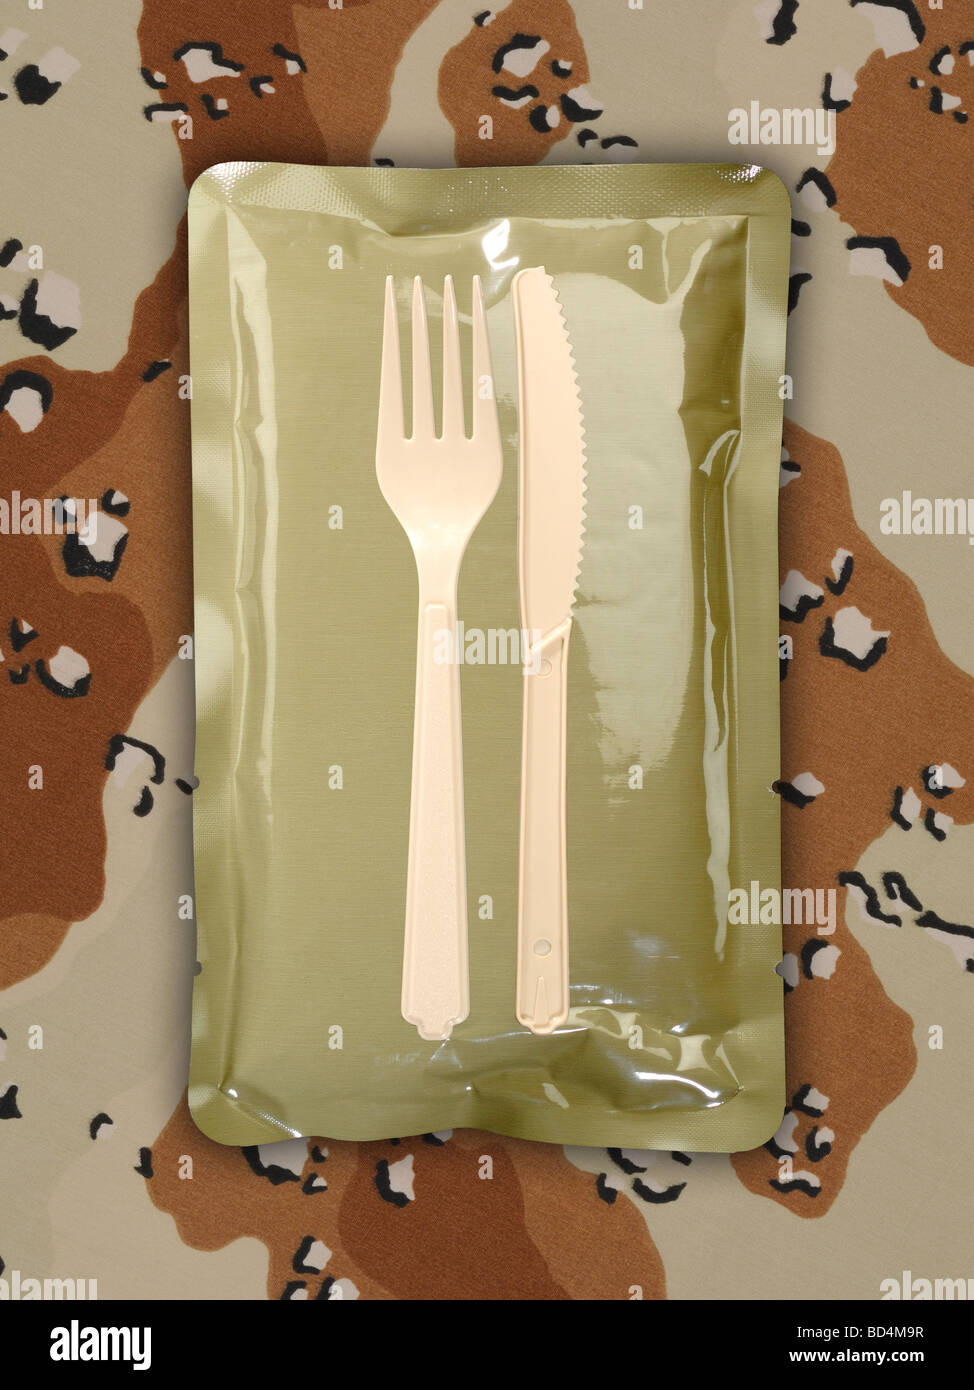 Une ration alimentaire militaire avec des ustensiles sur fond de camouflage tan Banque D'Images